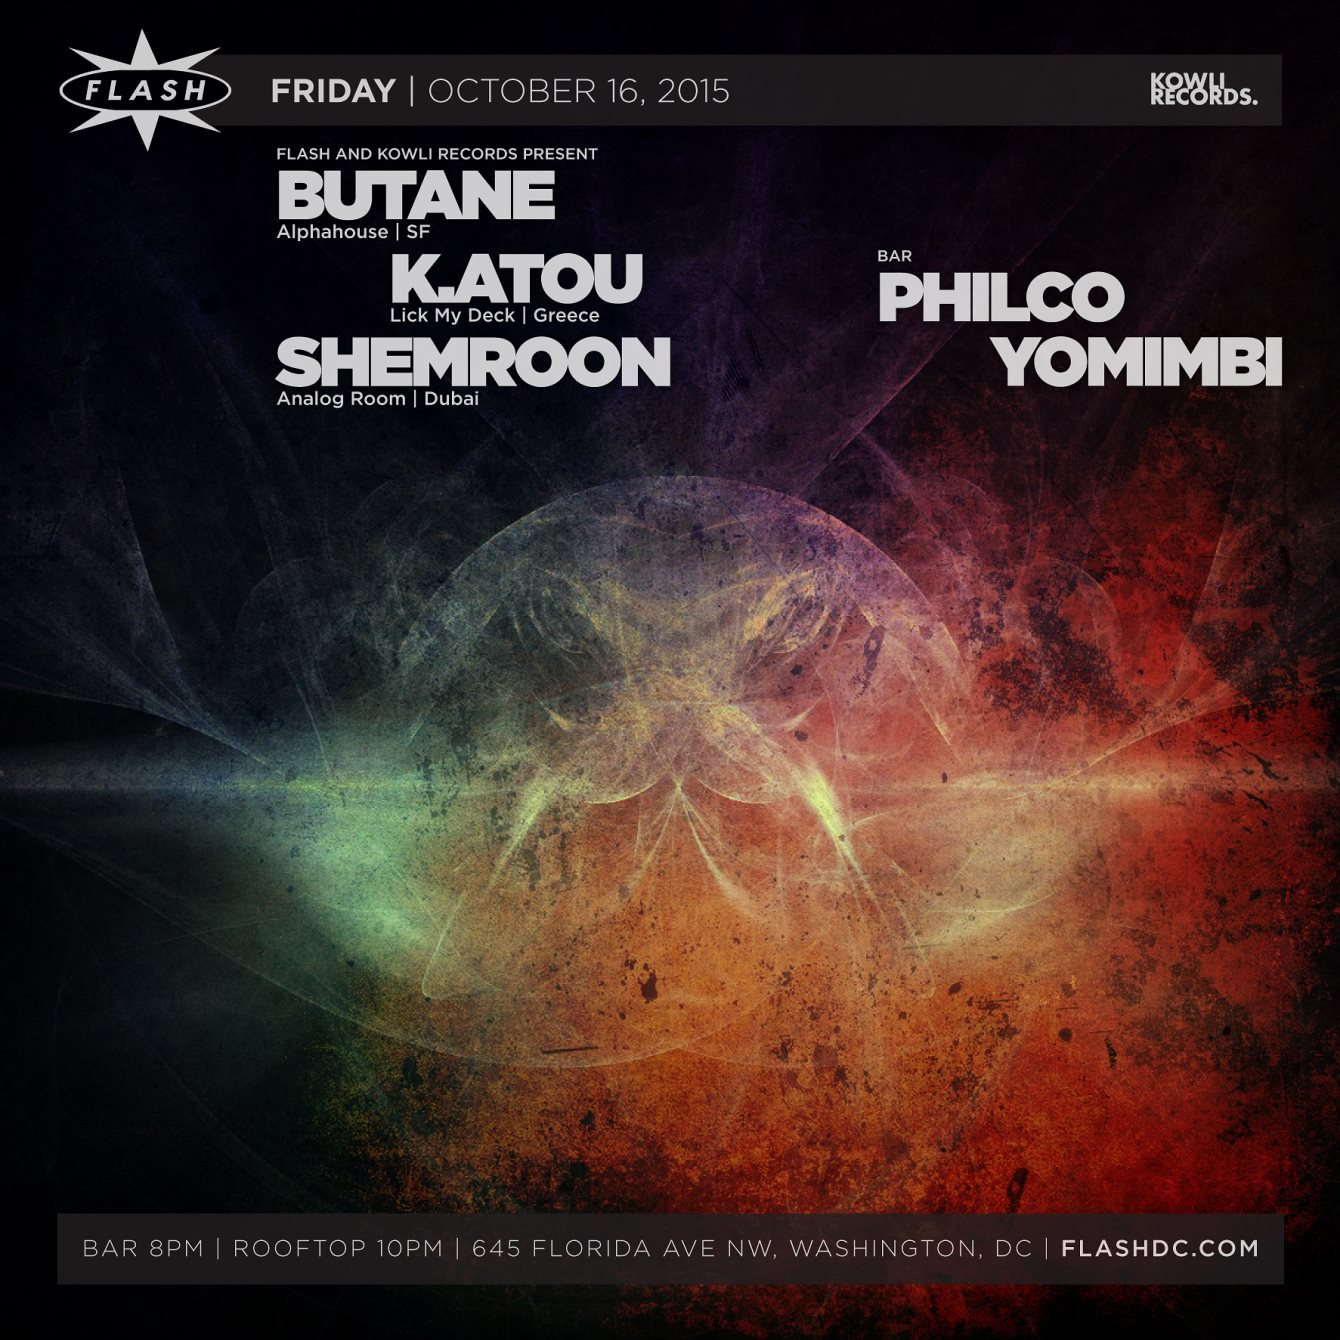 Flash and Kowli present Butane, K.Atou, Shemroom - Flyer front